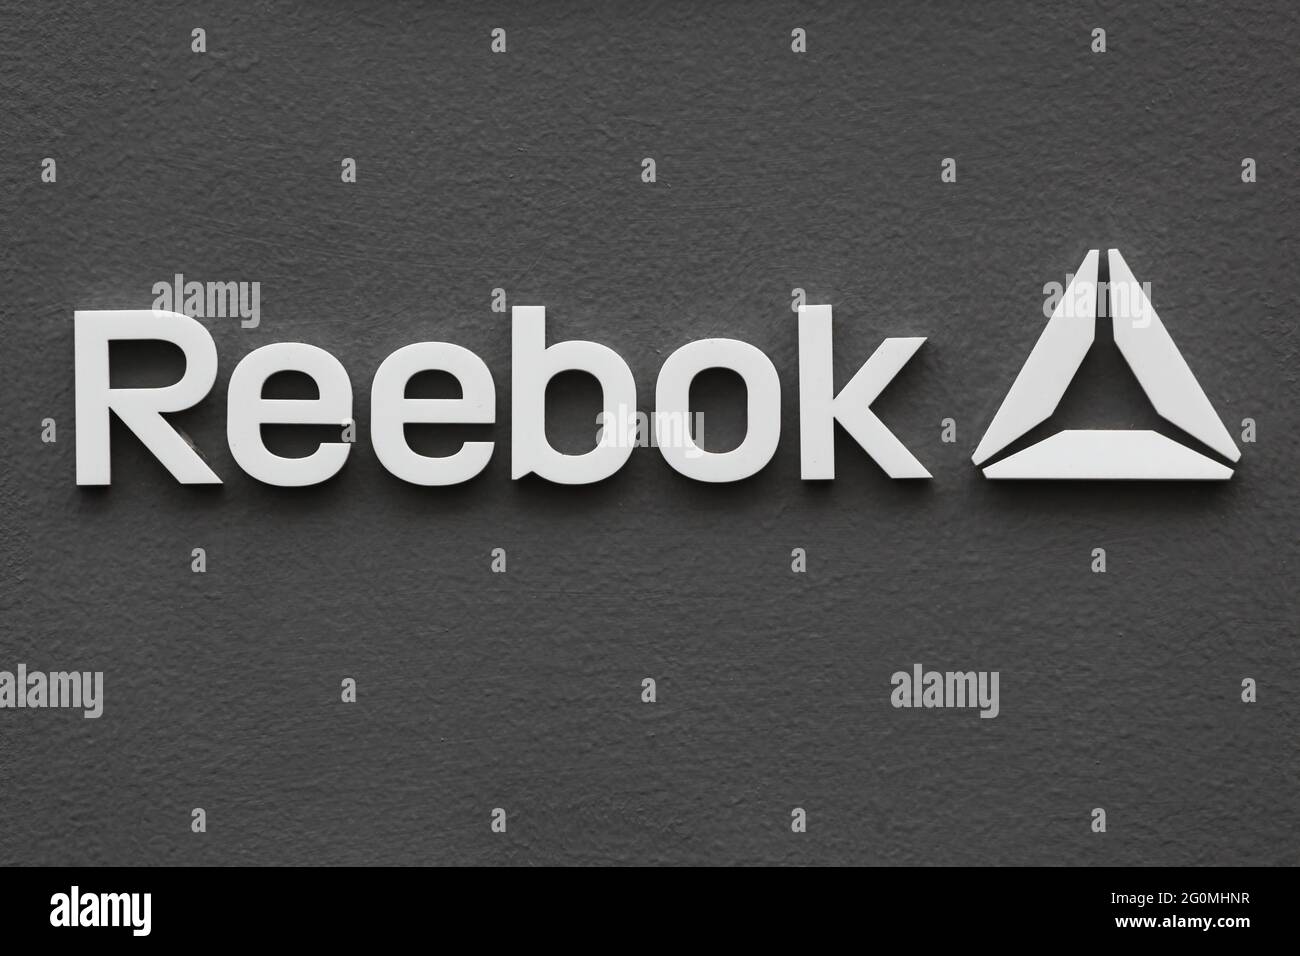 Copenhague, Danemark - 20 août 2020 : logo Reebok sur un mur. Reebok est une société mondiale de chaussures et de vêtements de sport Banque D'Images